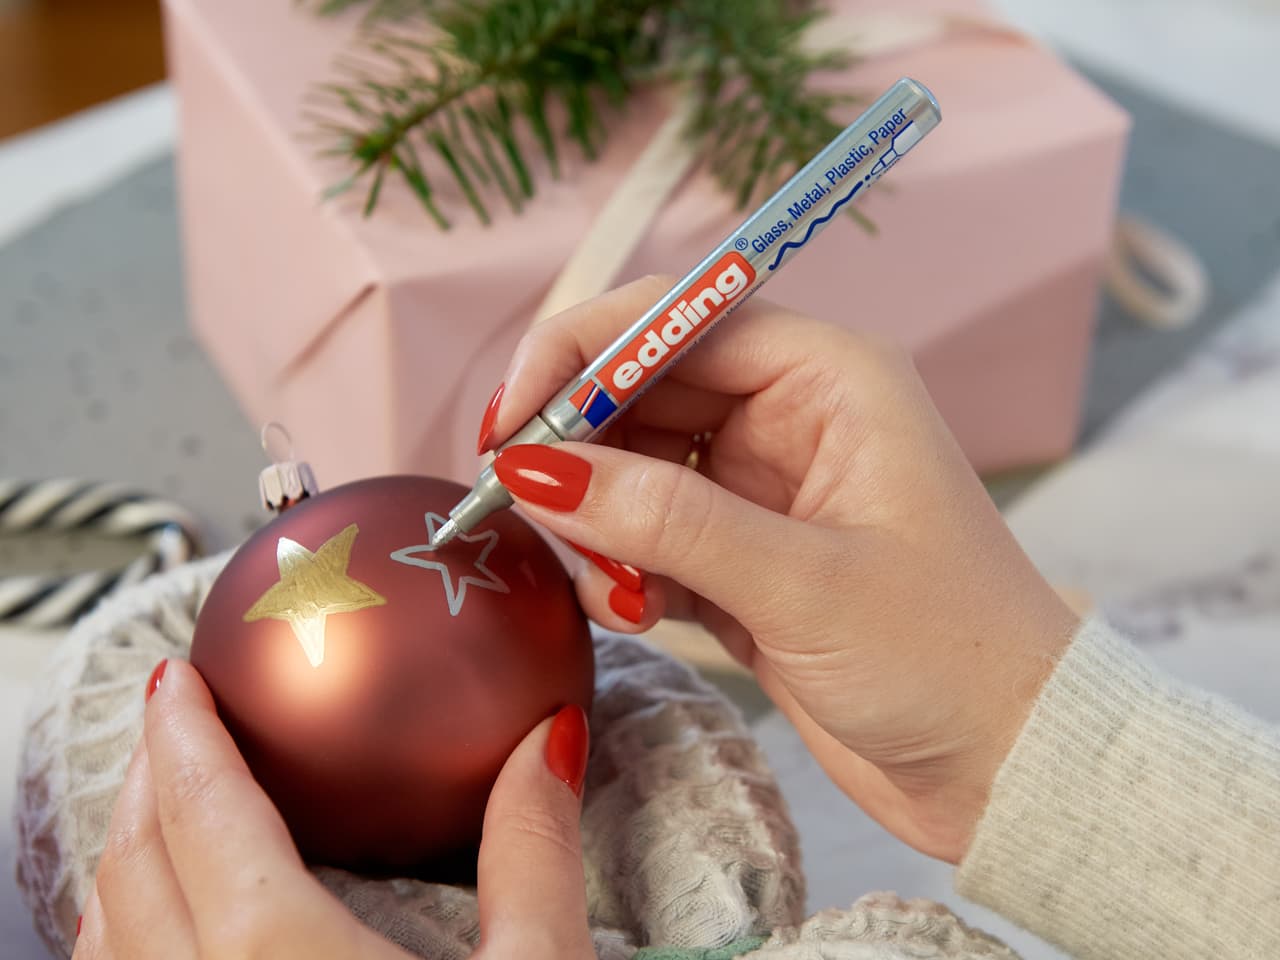 Personalisieren Sie die Weihnachtsstimmung: Ein Paar Hände verziert mit einem speziellen edding 751 Glanzlackmarker 5er-Set zart einen roten Weihnachtsschmuck mit festlichen Sternmotiven.